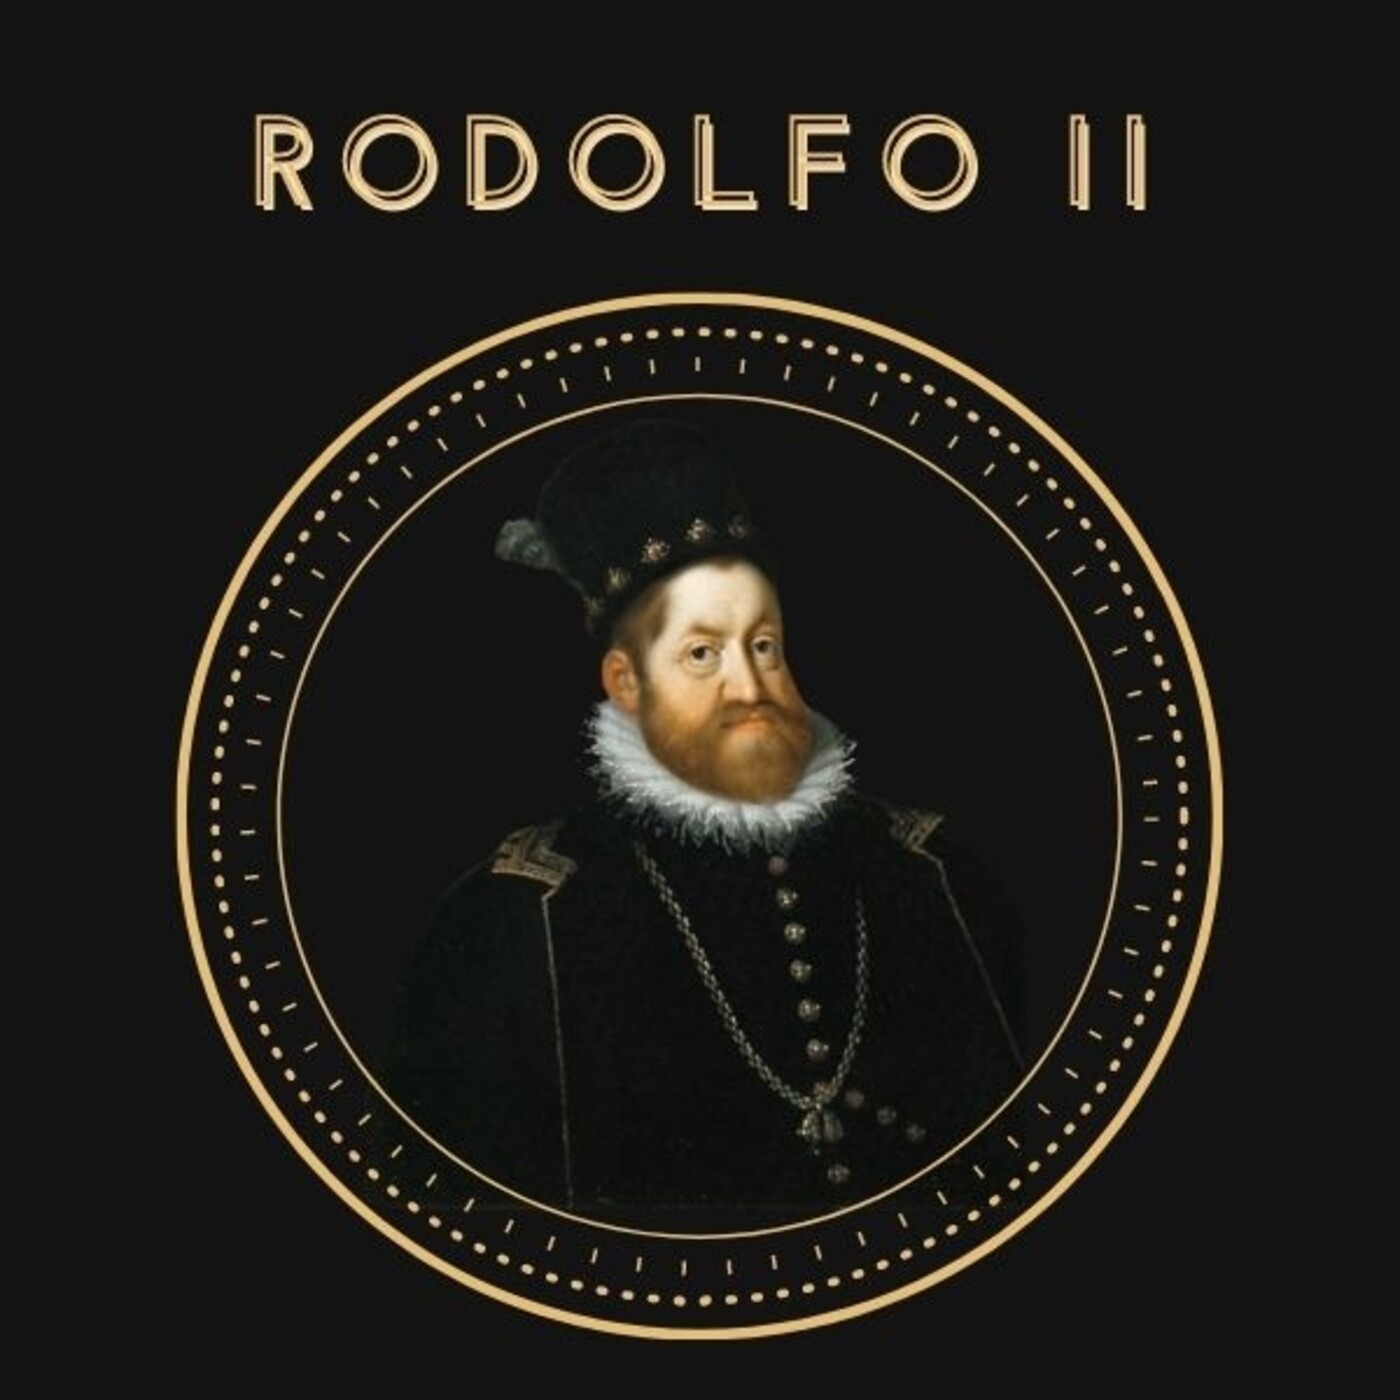 Ep. 12 Historia Oculta: Rodolfo II. El Emperador Nigromante